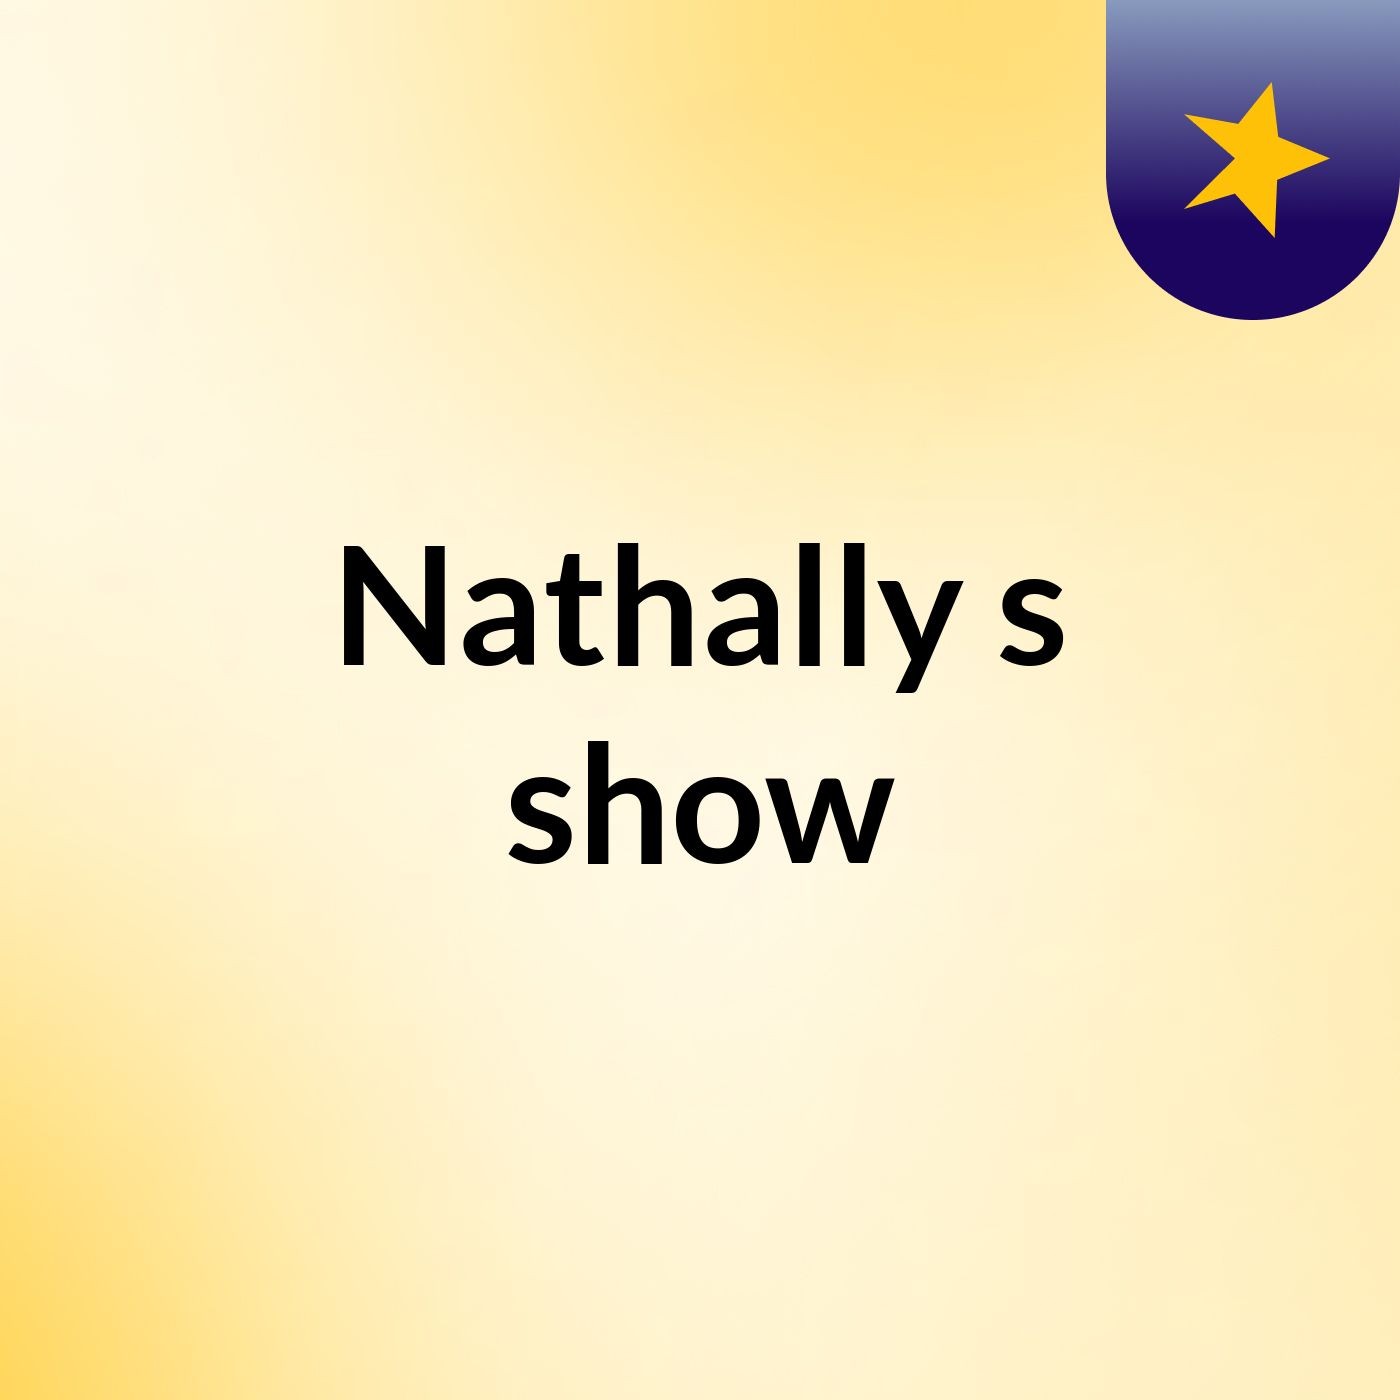 Nathally's show